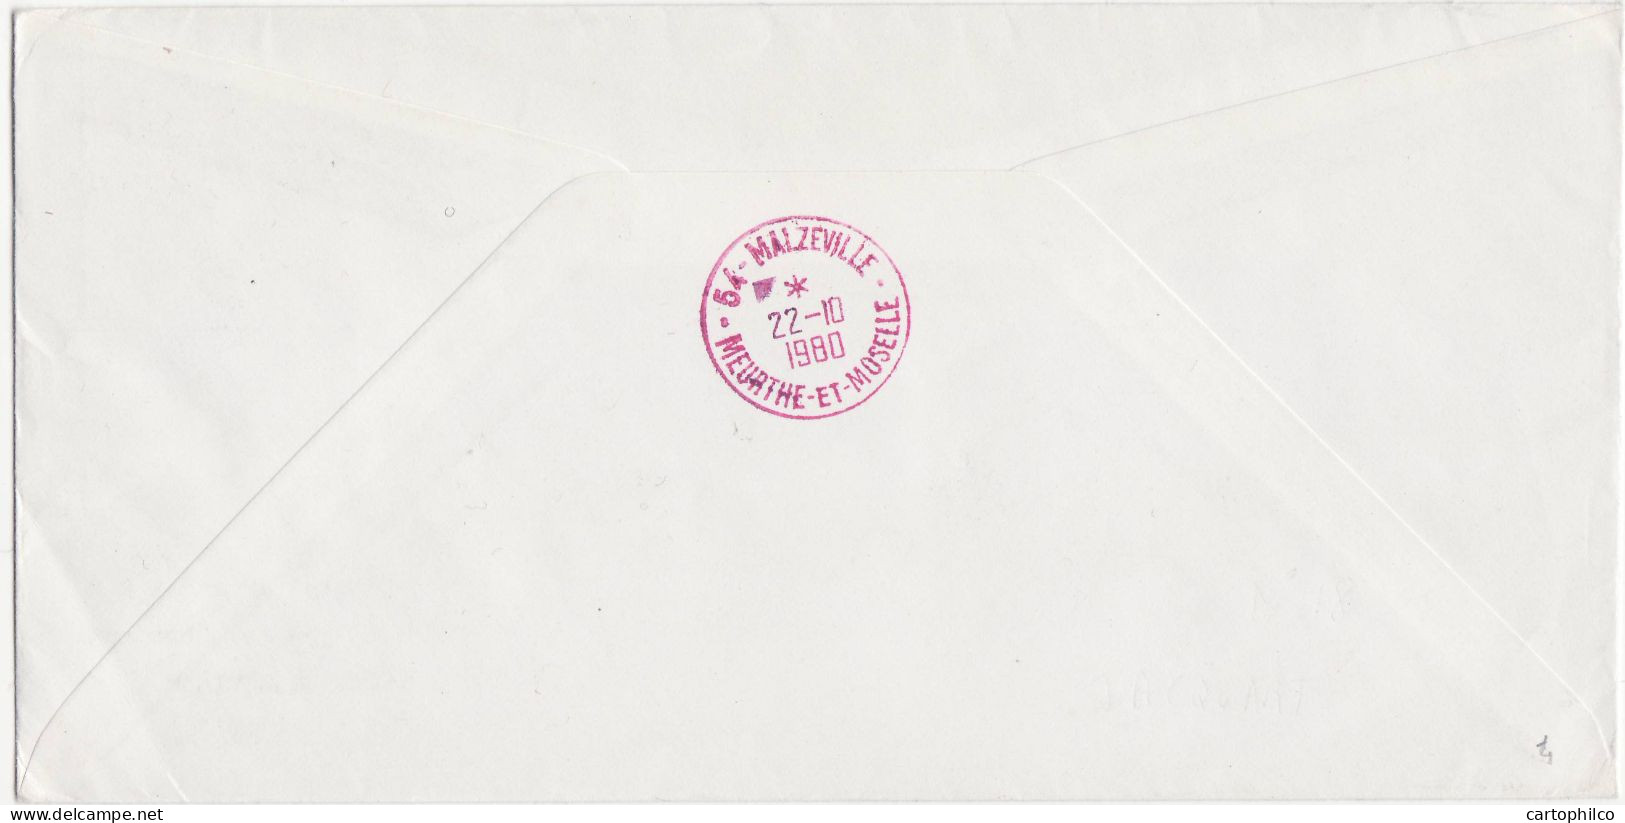 'TAAF Lettre Marion Dufresne MArtin De Vivies ST Paul 10 10 1980 Pour Malzeville Amiral D''Entrecosteaux' - Lettres & Documents